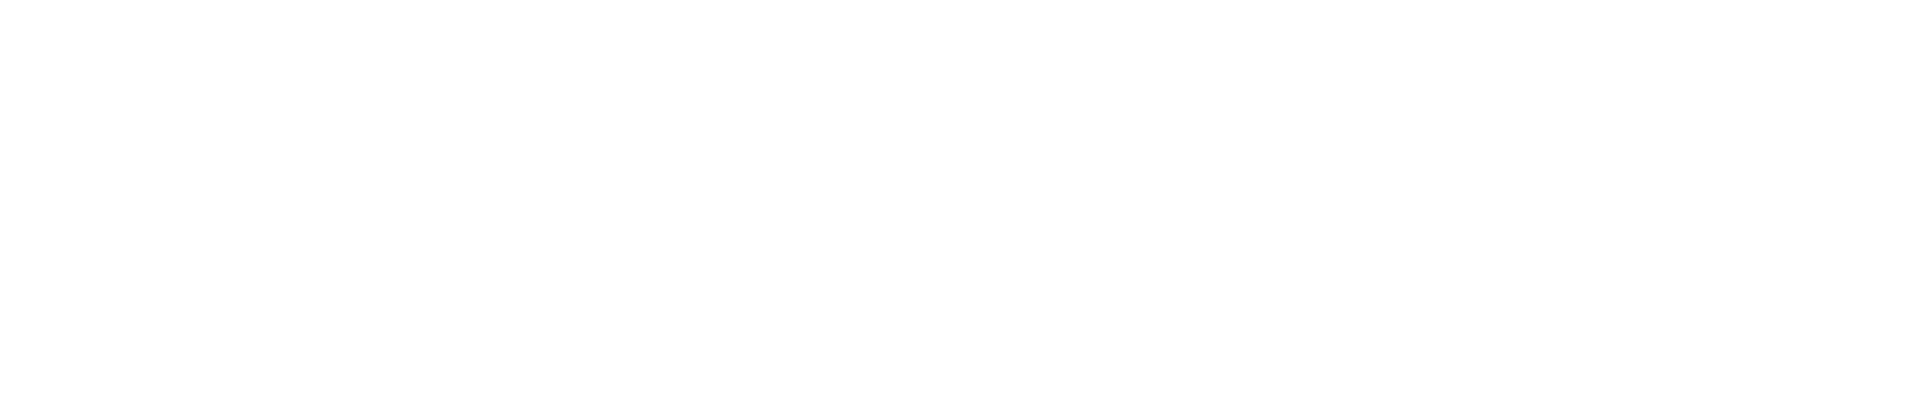 Ortodoncia10